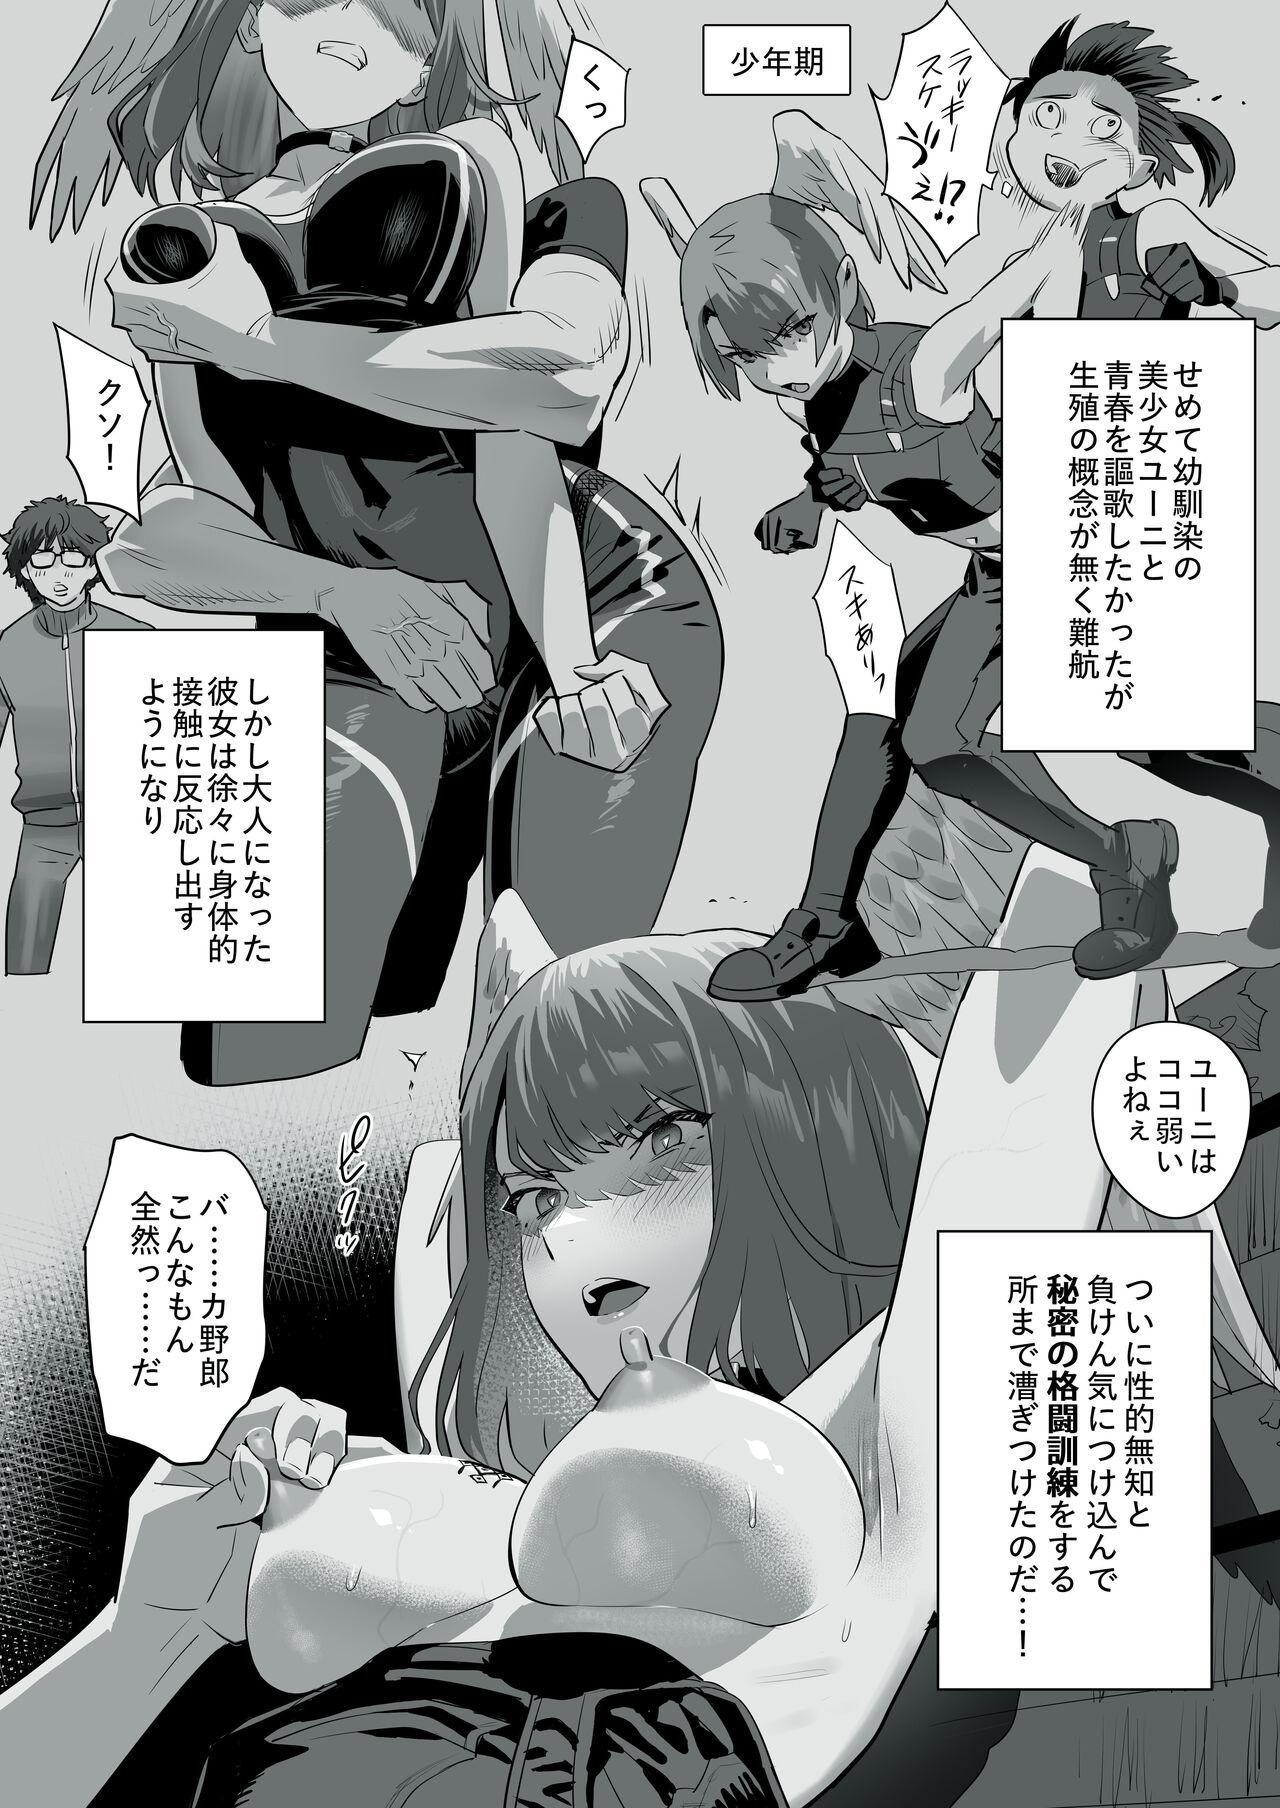 Jerk Off Tensei-saki ga Xenoblade 3 Manga - Xenoblade Xenoblade chronicles 3 Swingers - Page 2